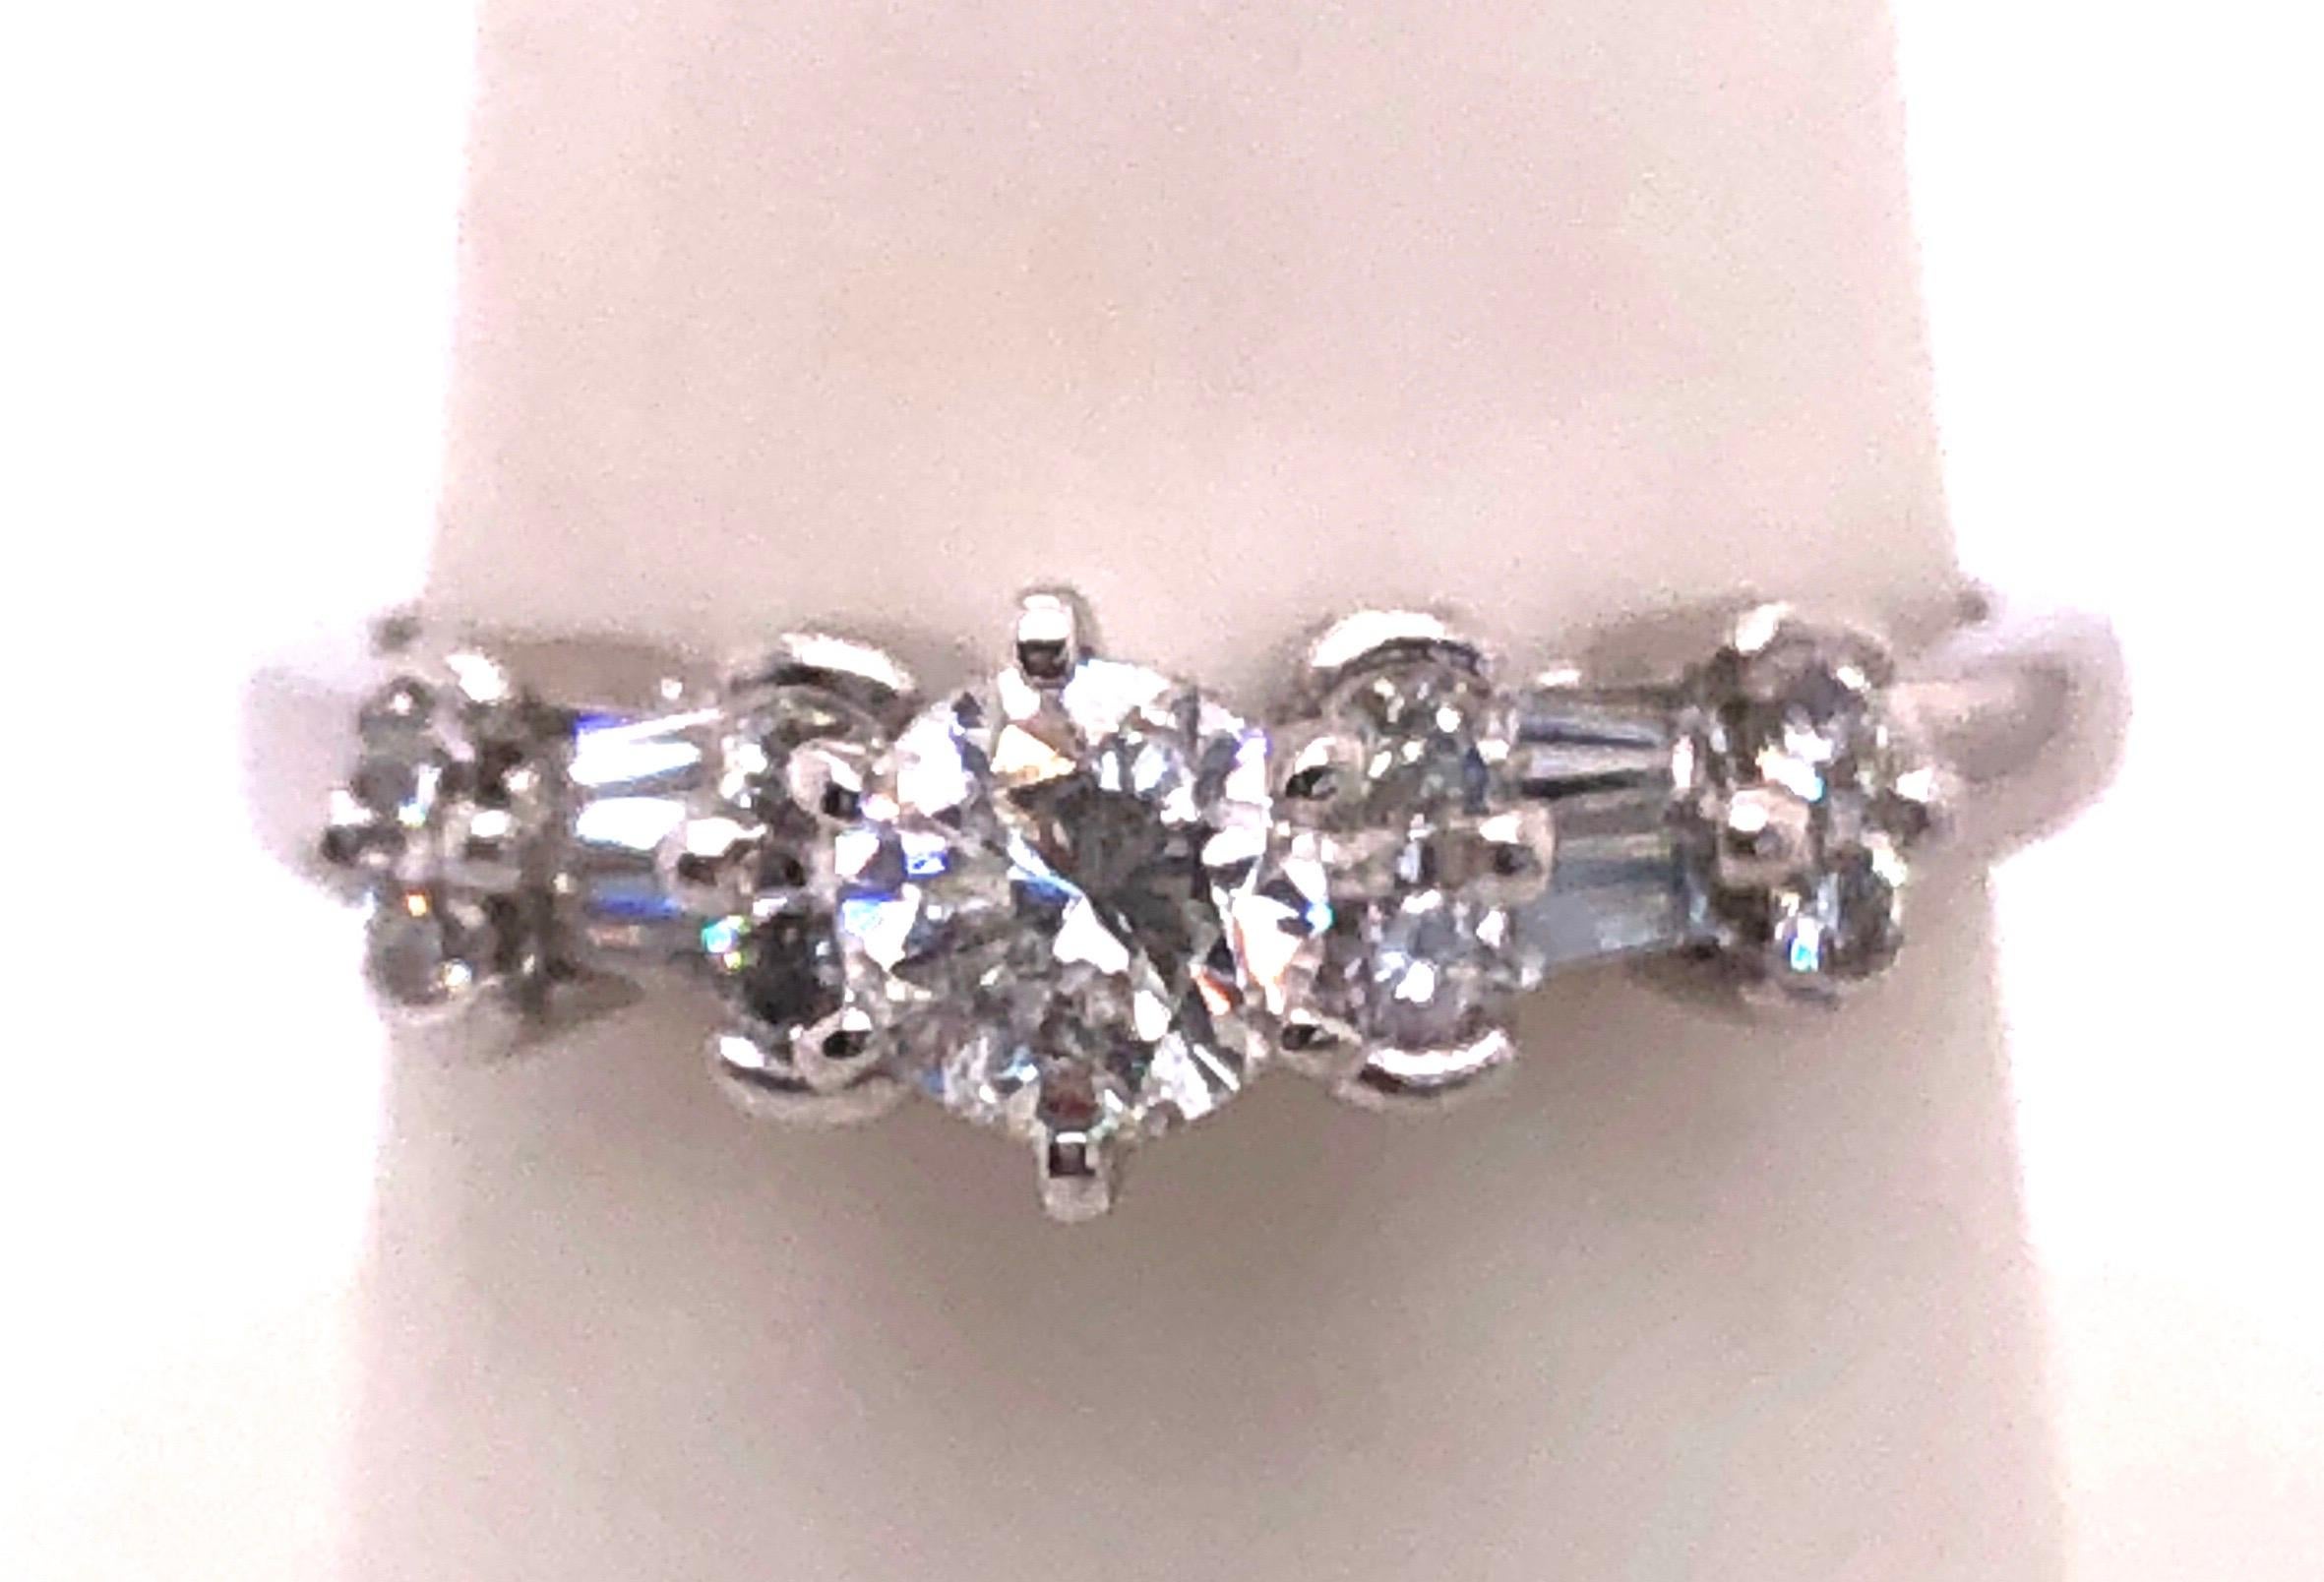 14 Karat White Gold Diamond Engagement Ring 1.30 Total Diamond Weight.
Size 7.25
3.2 grams total weight